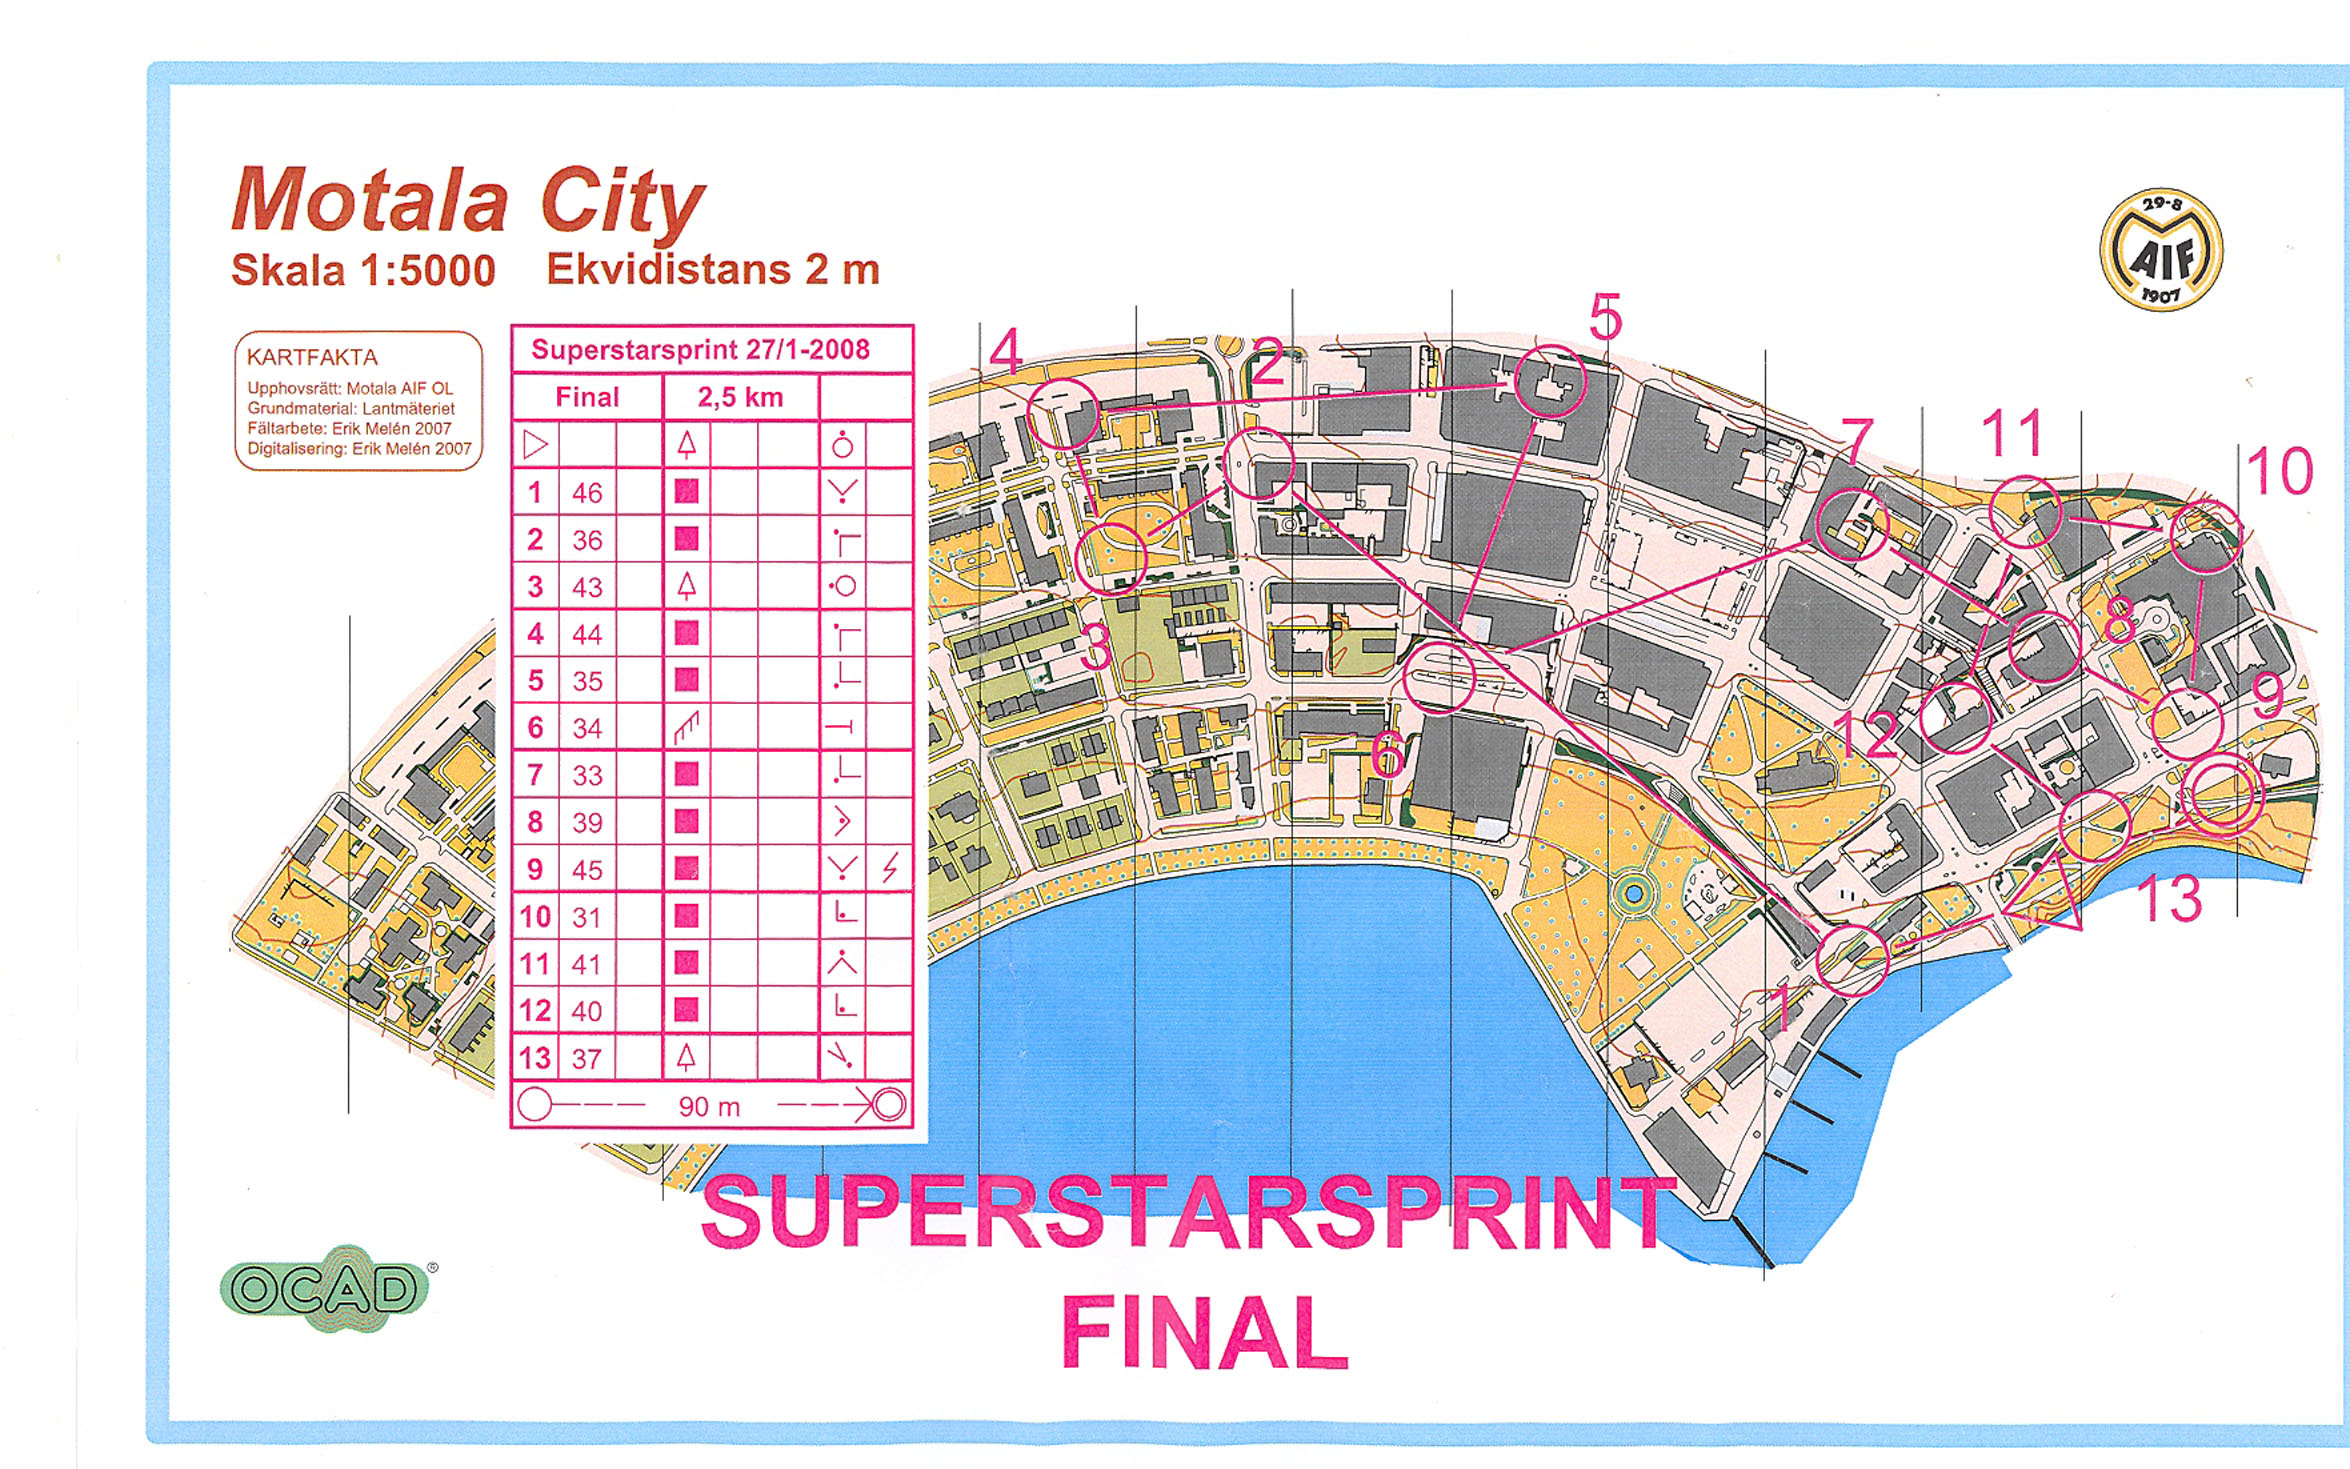 Superstarsprint Final (27-01-2008)